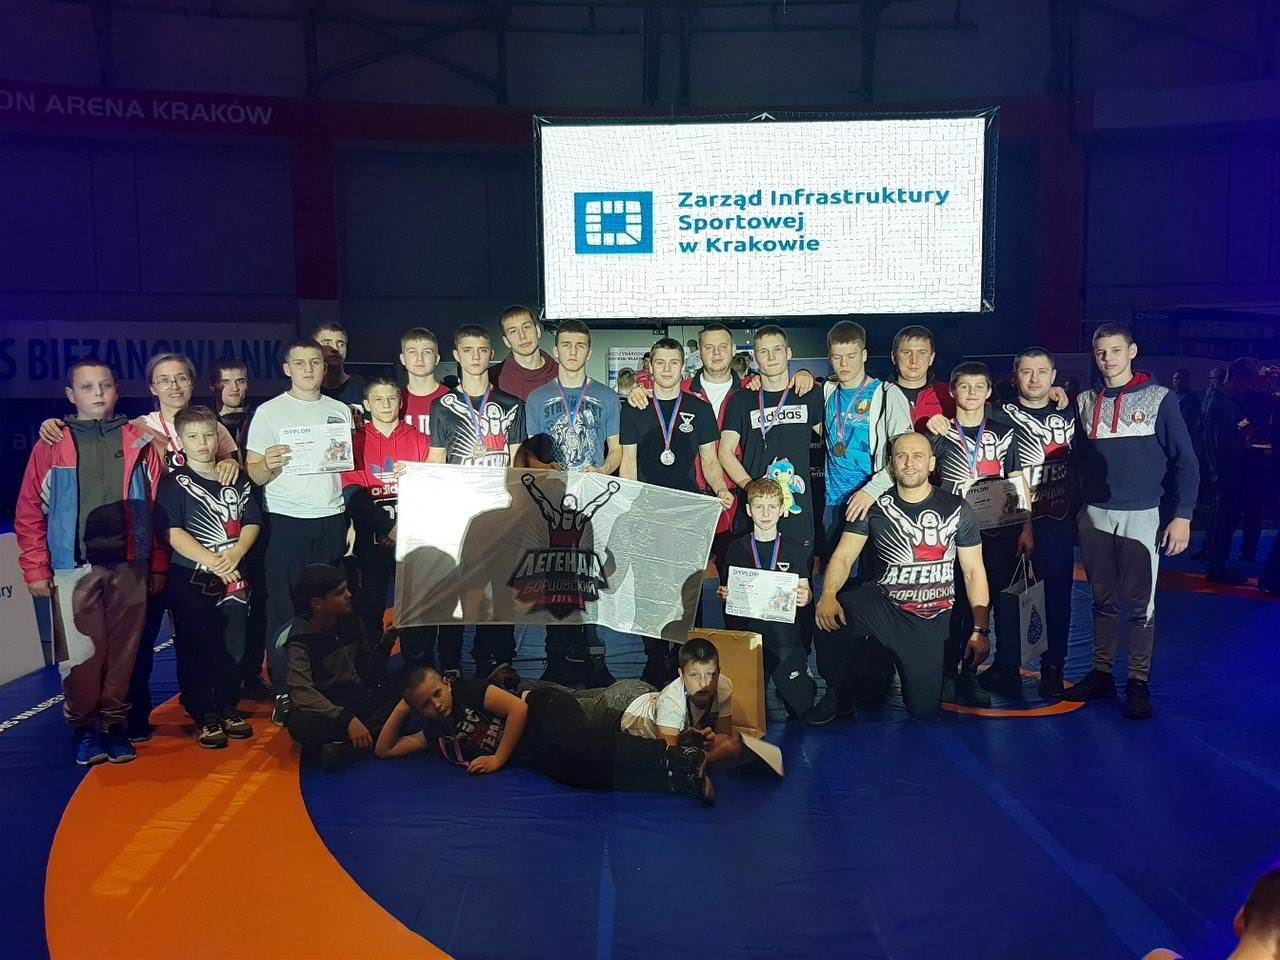 Спортсмены Легенды на международном турнире в Кракове, Польша